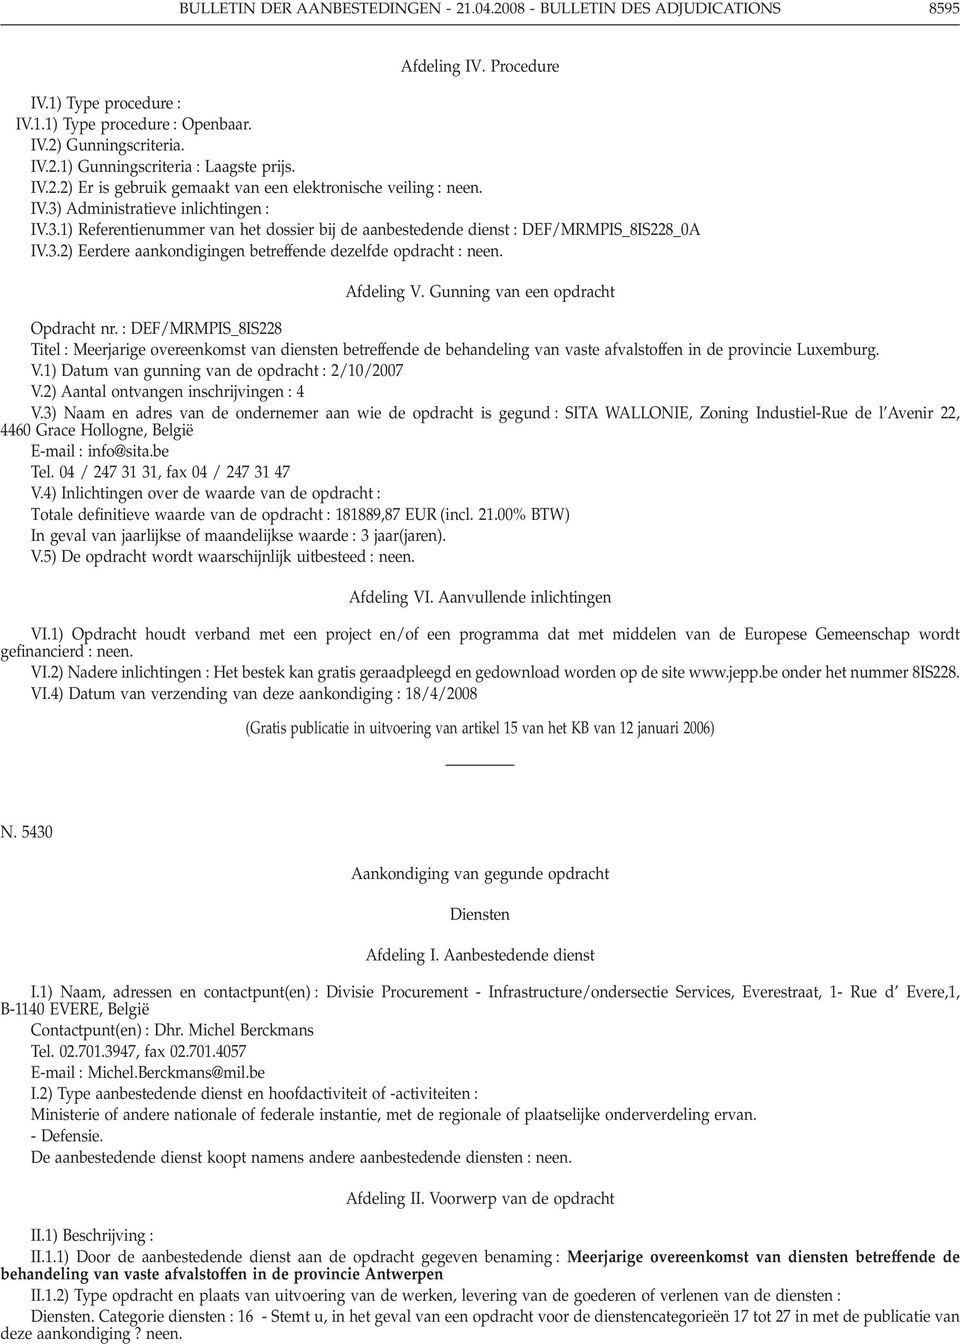 Gunning van een opdracht Opdracht nr. : DEF/MRMPIS_8IS228 Titel : Meerjarige overeenkomst van diensten betreffende de behandeling van vaste afvalstoffen in de provincie Luxemburg. V.